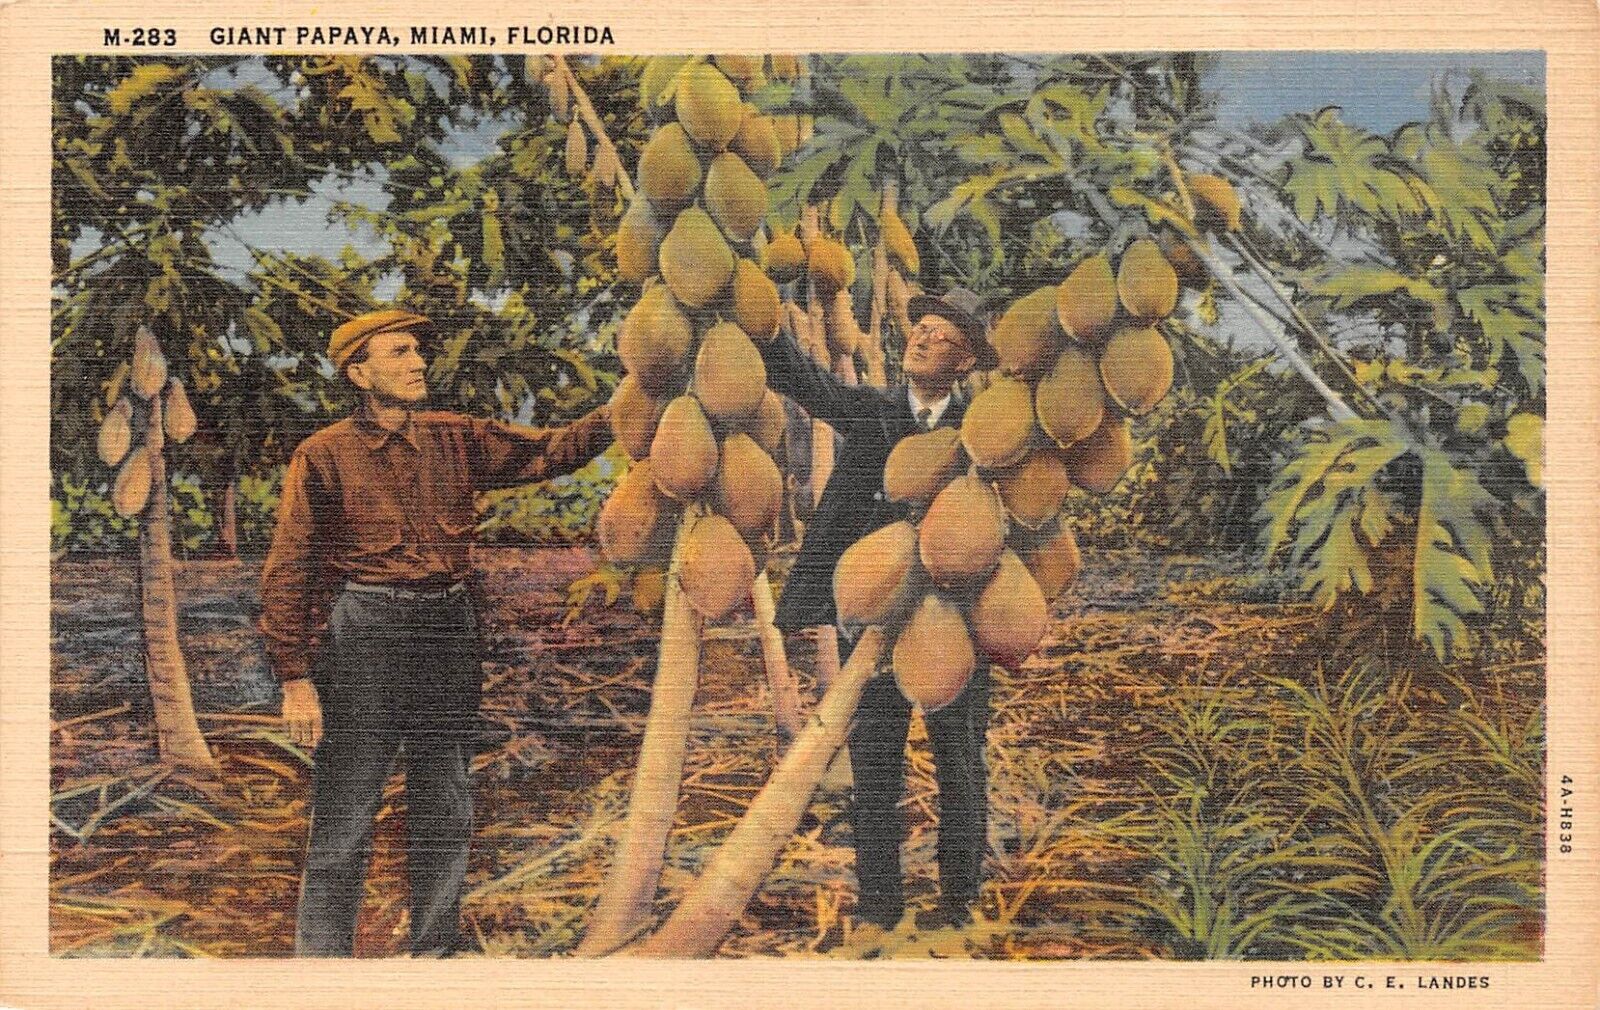 Giant Papaya Miami Florida 1938 Postcard